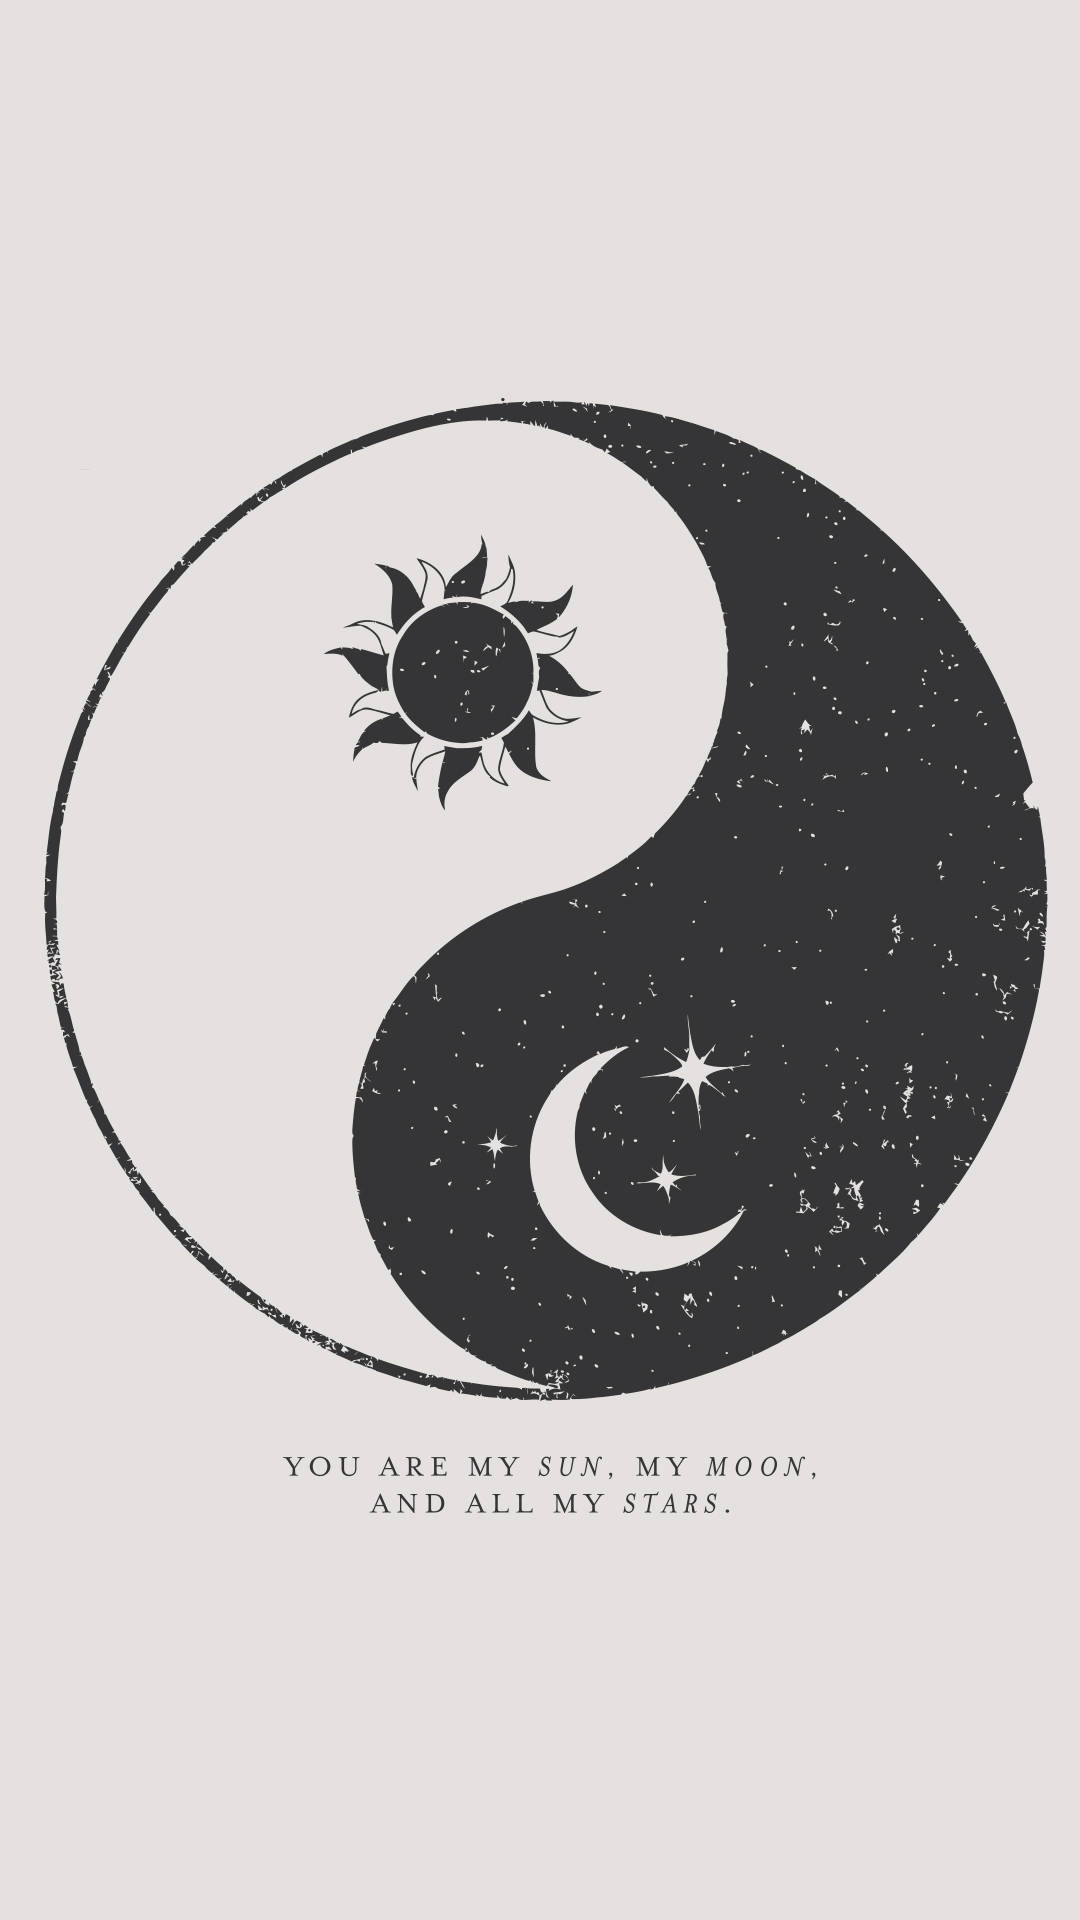 The sun and moon in a yin symbol - Spiritual